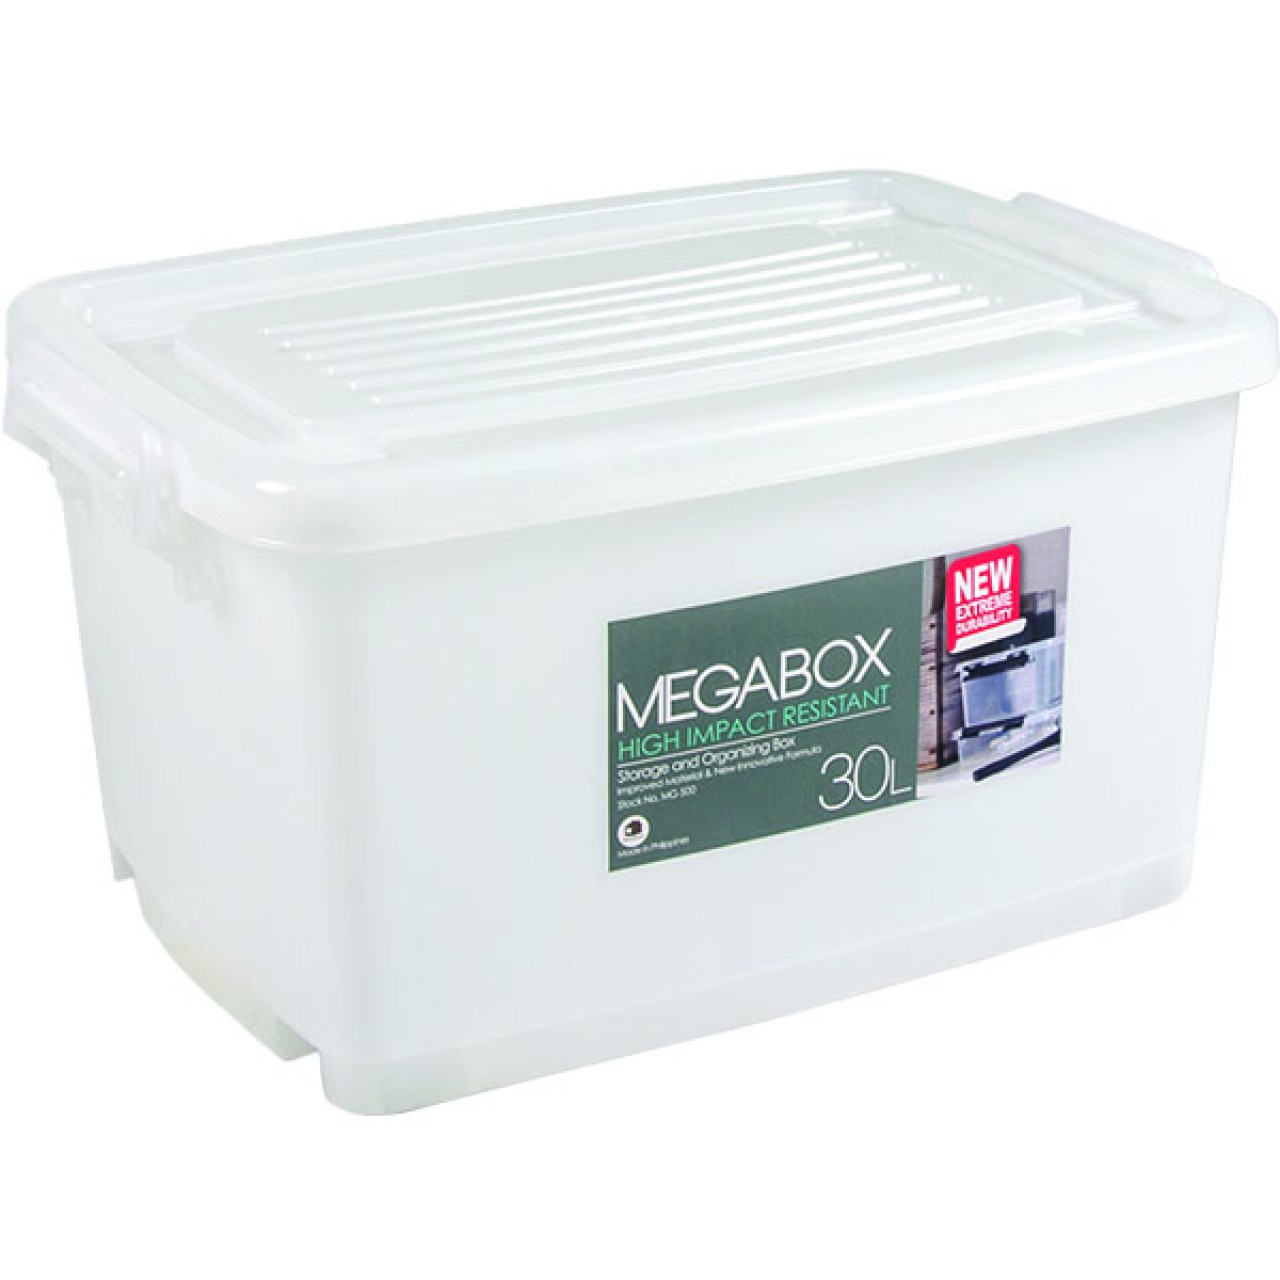 MEGABOX STORAGE BOX MG-500  30L